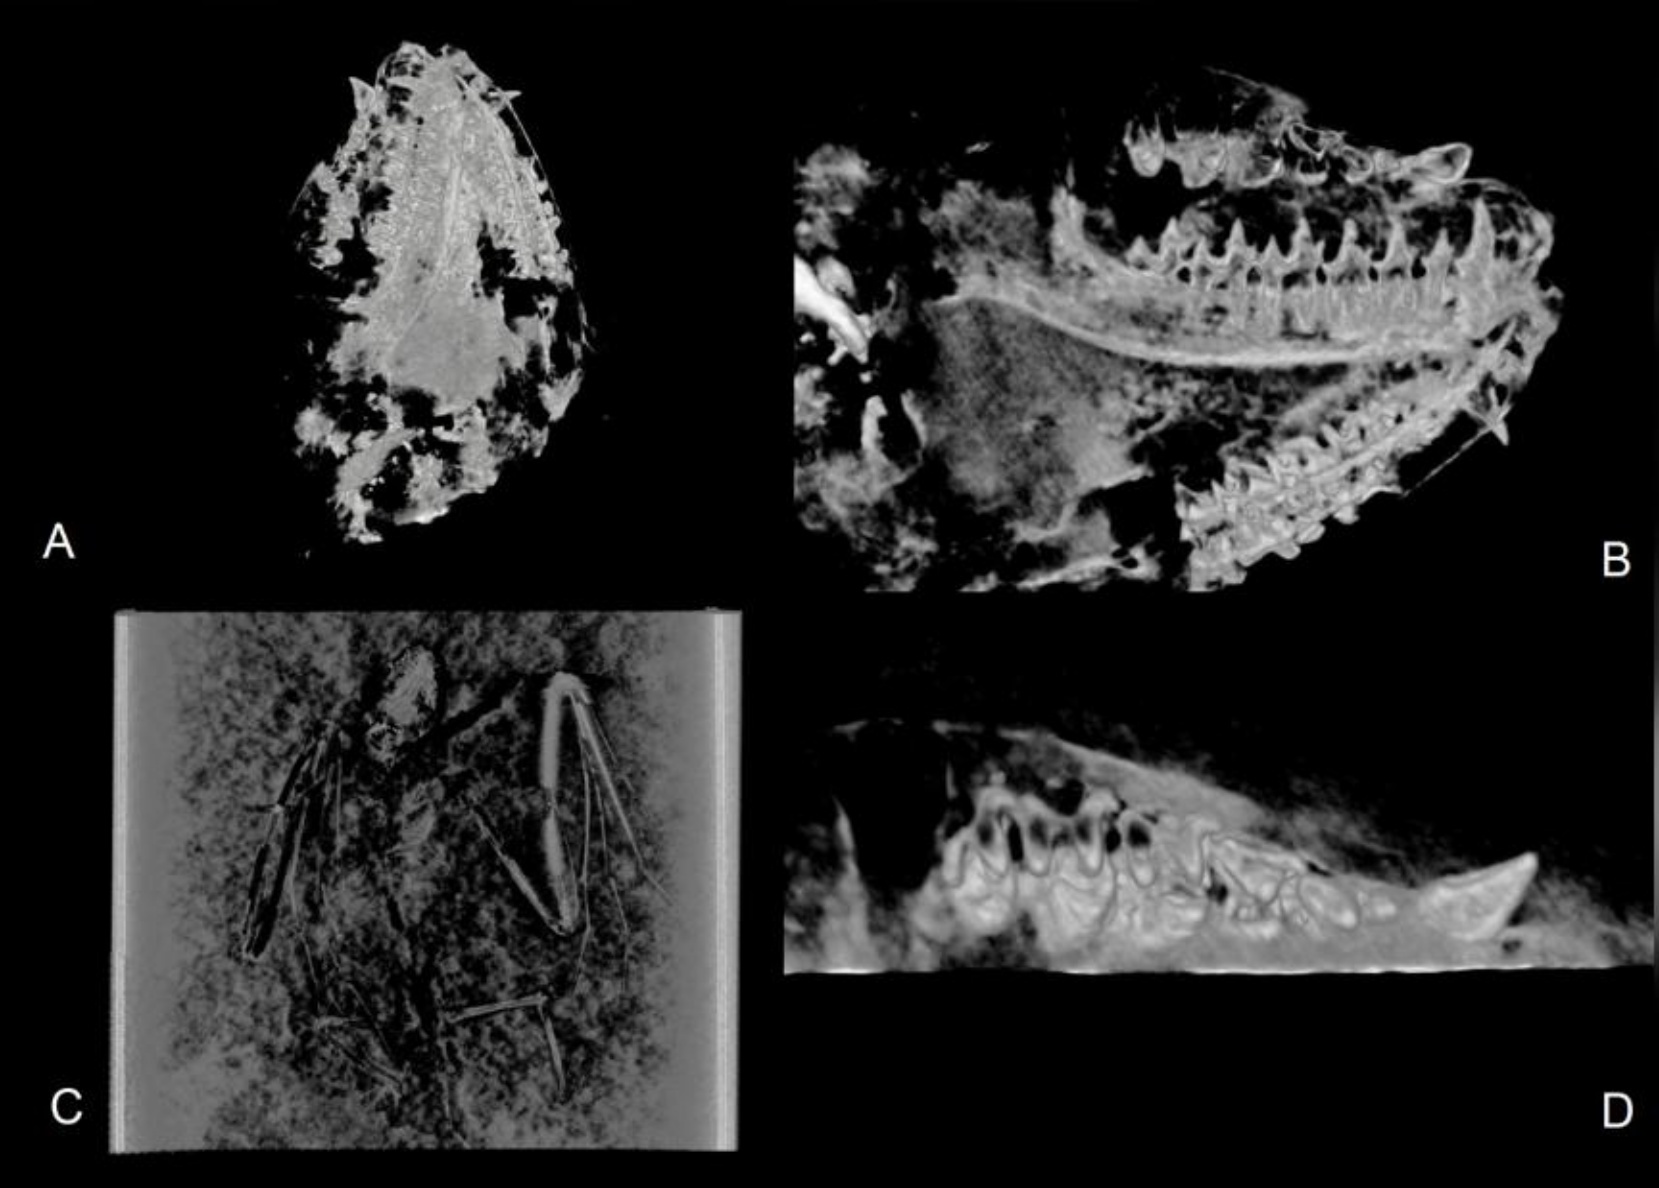 Siin on näidatud Icaronycteris gunnelli CT-visualisatsioonid, sealhulgas järgmised vaated: A) kolju ventraalne vaade; B) parema hambaravi labiaalne vaade; C) Seljavaate skelett; D) Parema ülalõualuu oklusaalne vaade.